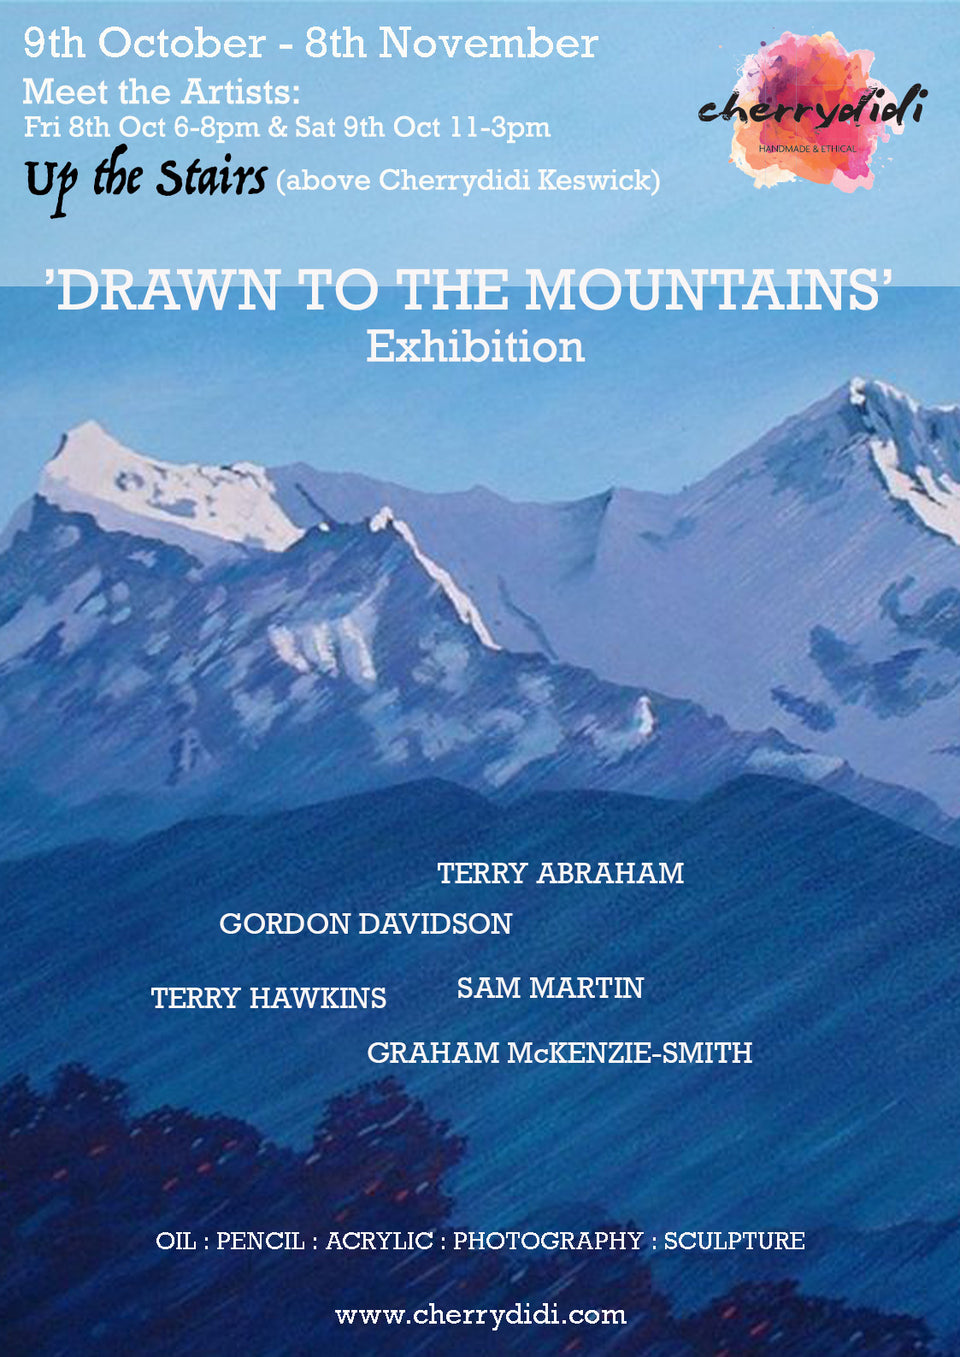 'Drawn to the Mountains' Exhibition - Cherrydidi Keswick